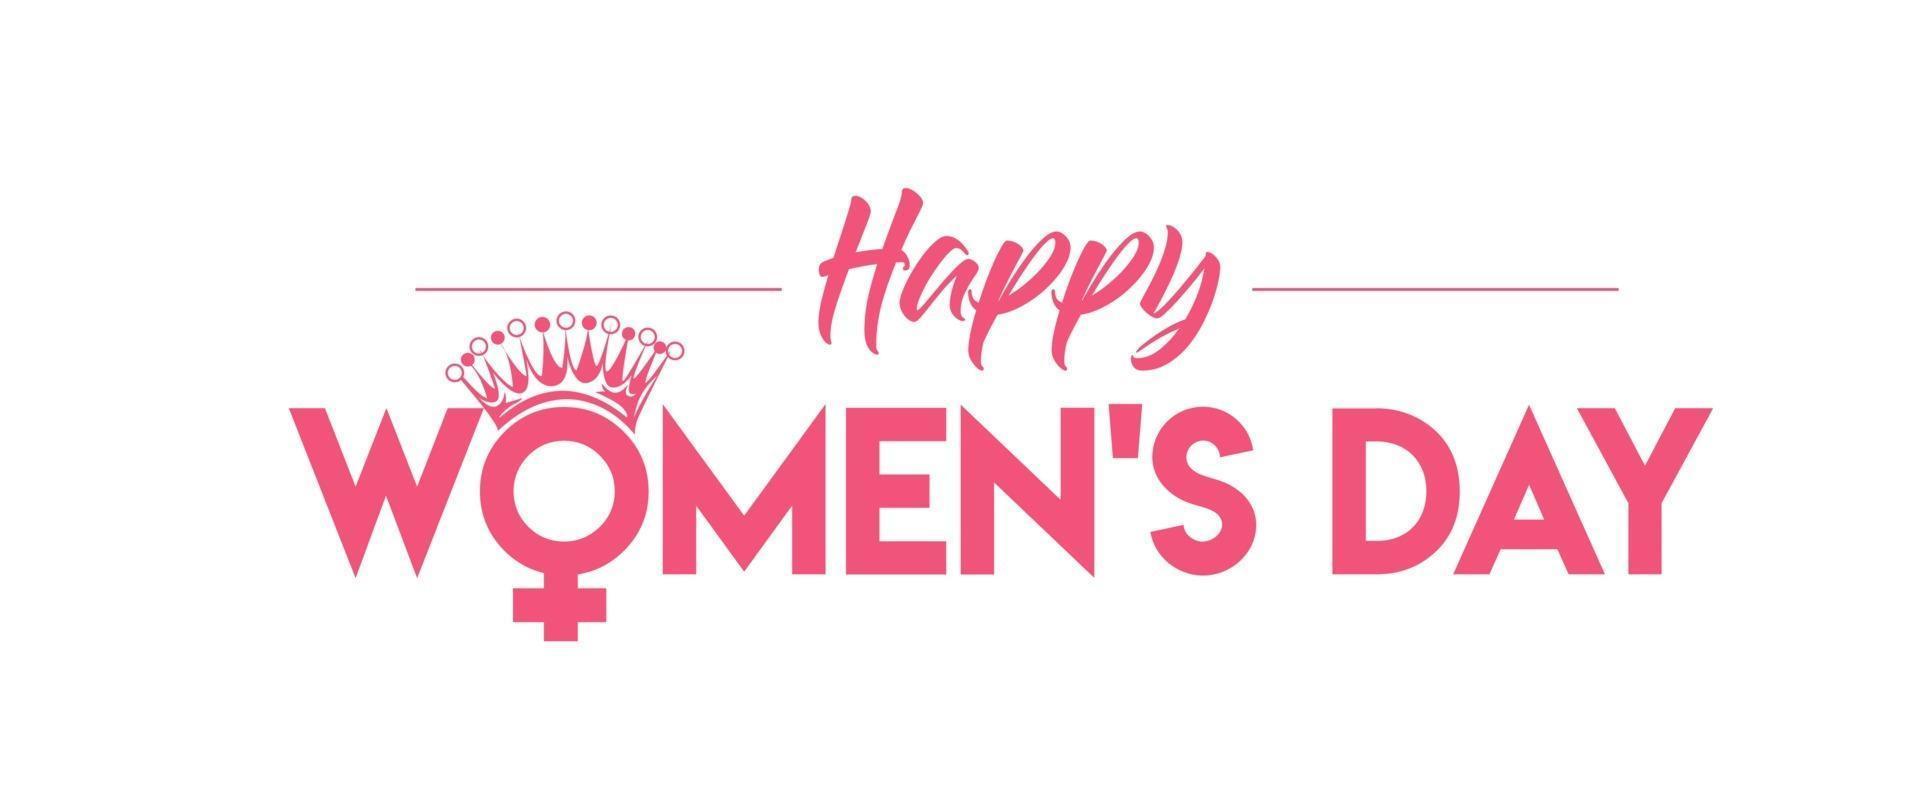 8 maart, gelukkige vrouwendag typografie tekst. vector illustratie